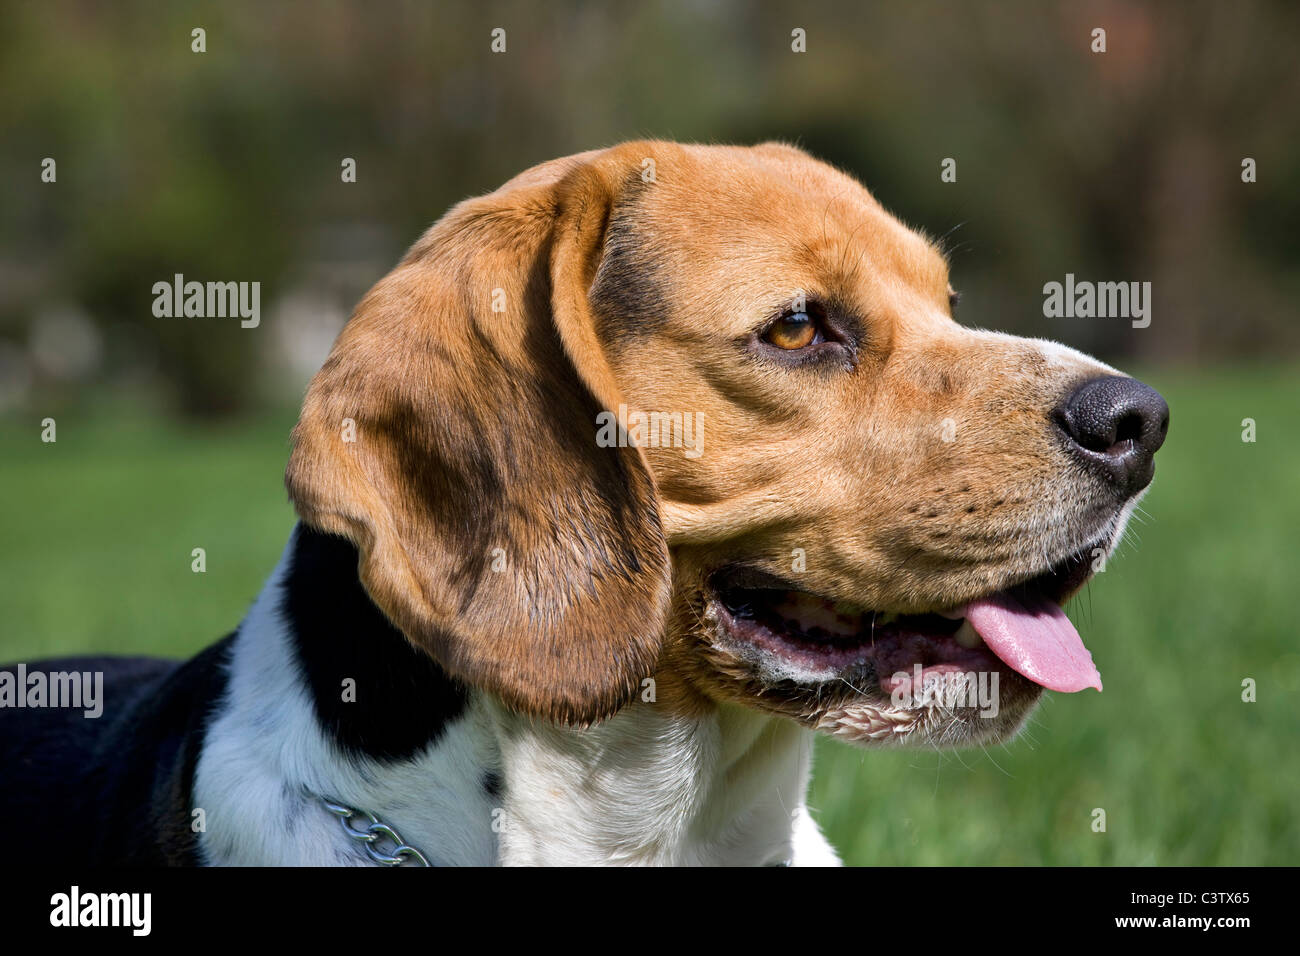 Beagle (Canis lupus familiaris) jadeando en el jardín Foto de stock